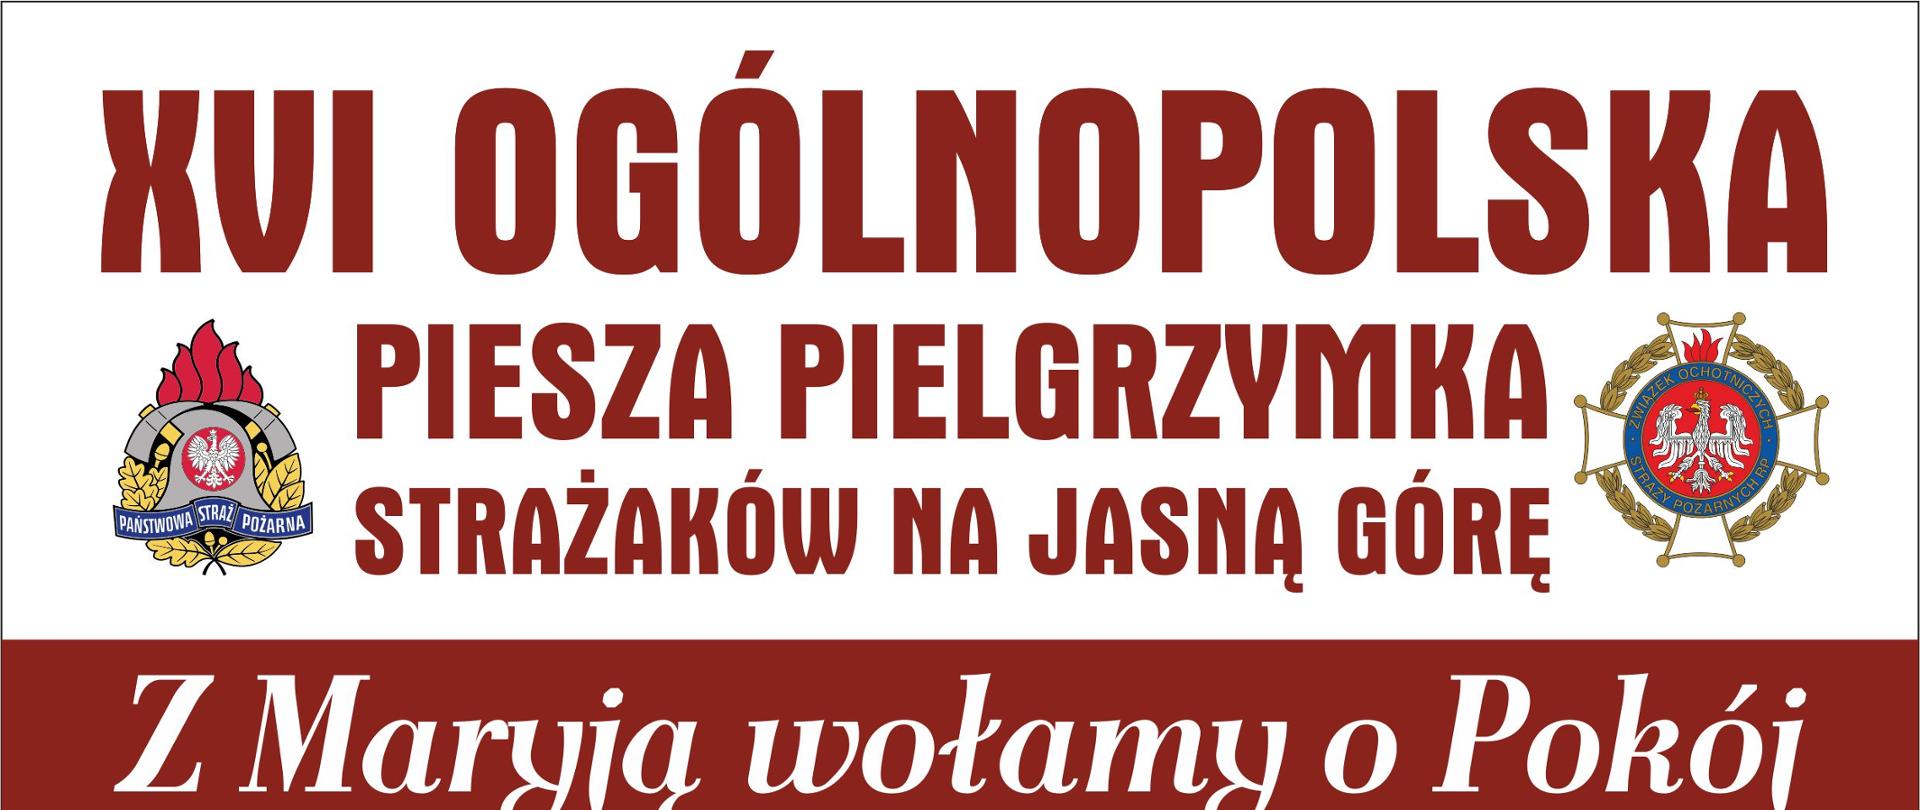 plakat promujący pielgrzymkę do Częstochowy